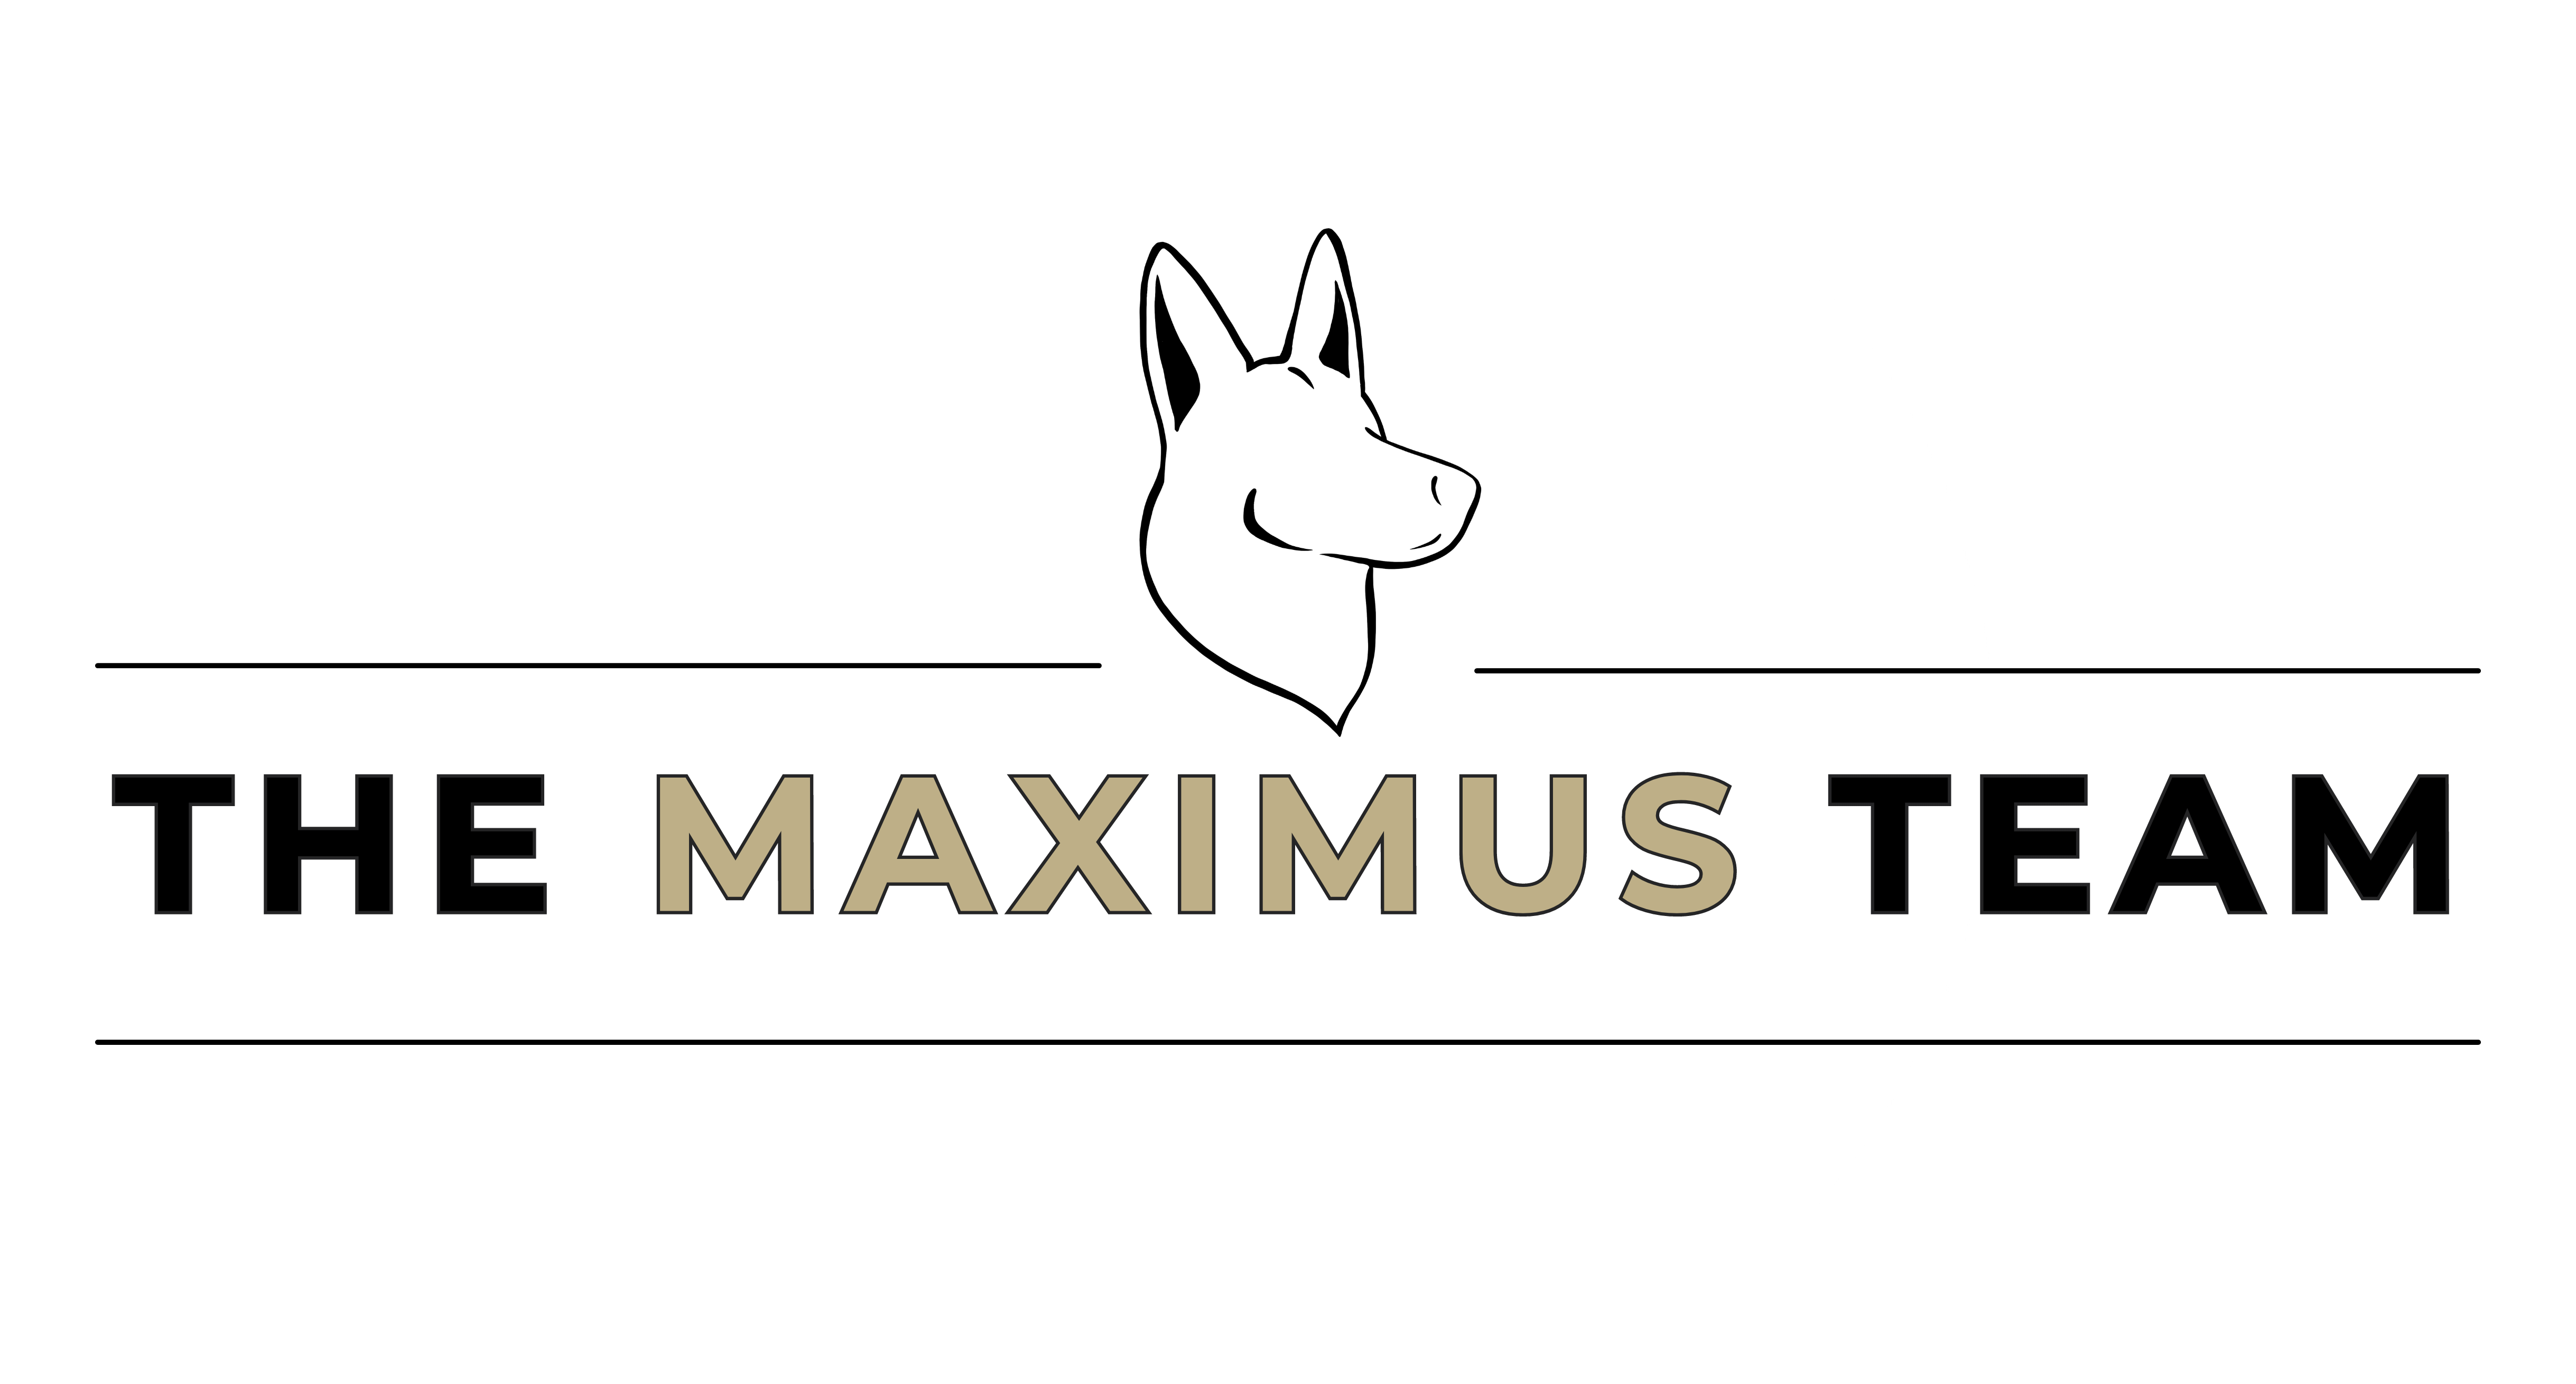 the maximus team (3000 x 3000 px)